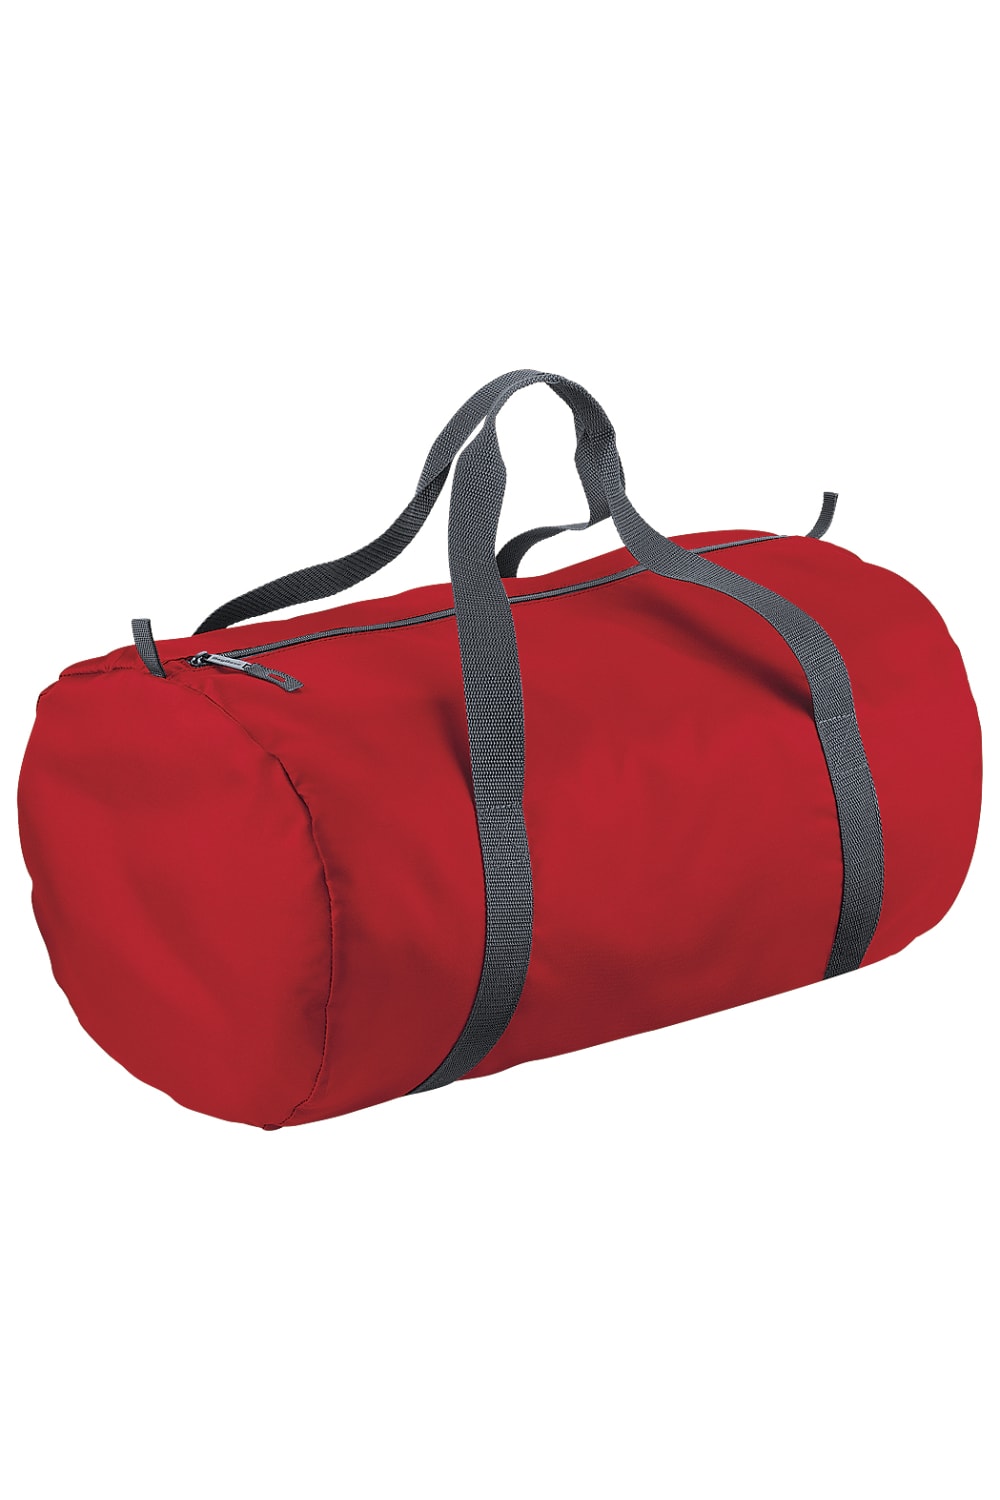 Packaway Barrel Bag/Duffel Water Resistant Travel Bag (8 Gallons) - Classic Red